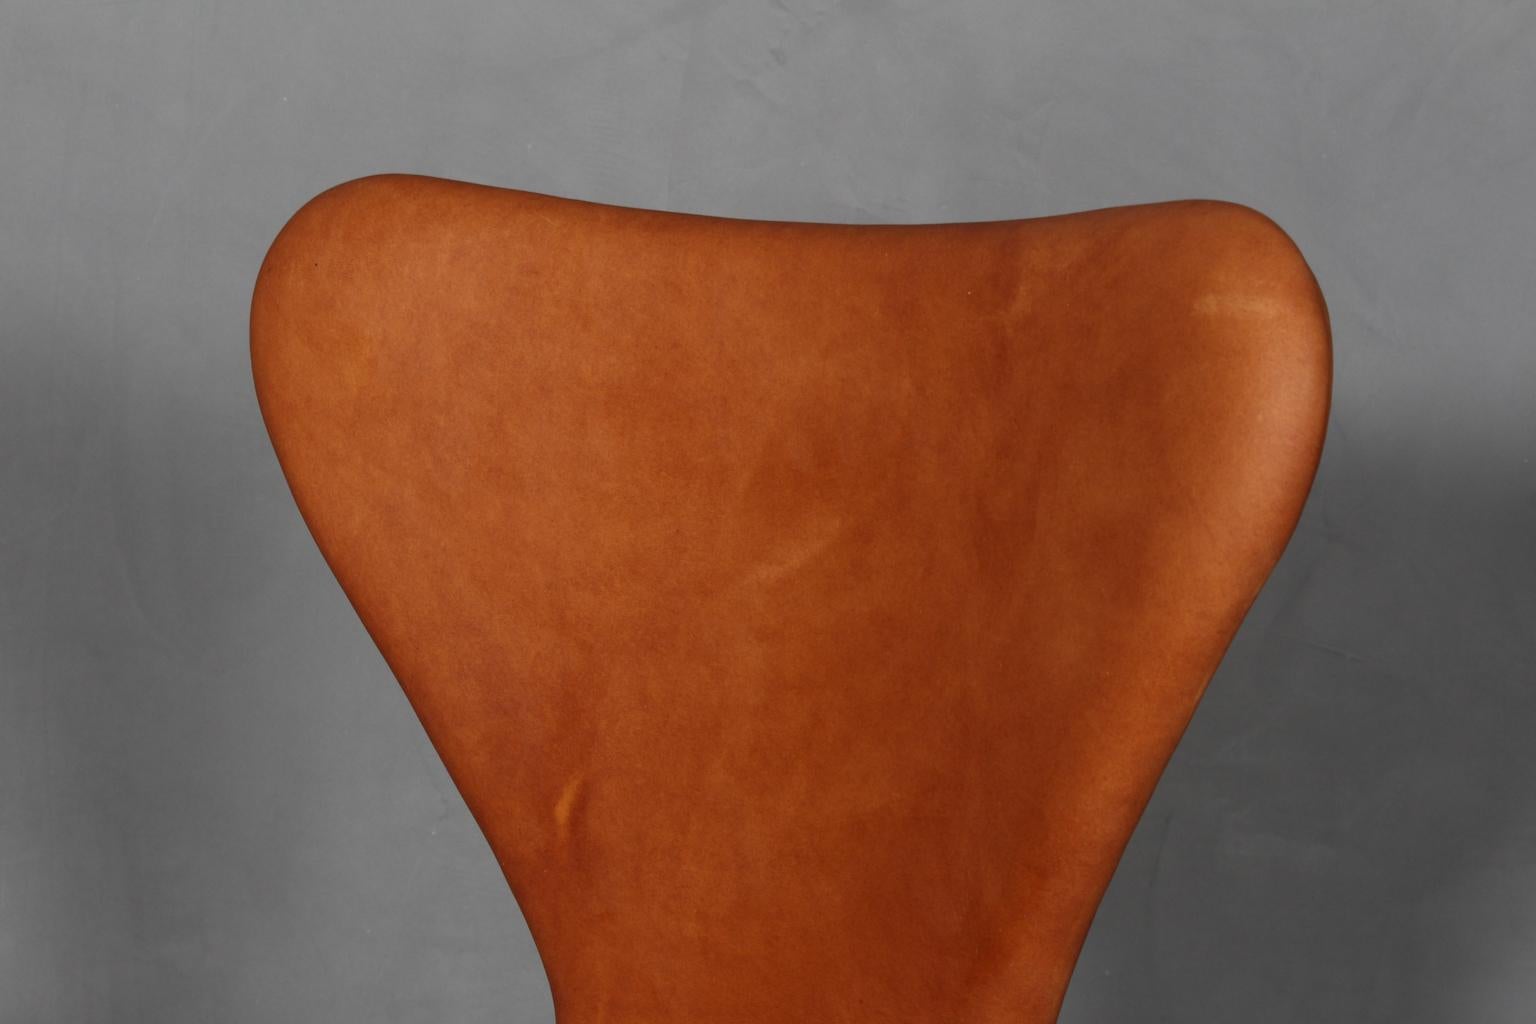 Scandinavian Modern Arne Jacobsen Dining Chair For Sale